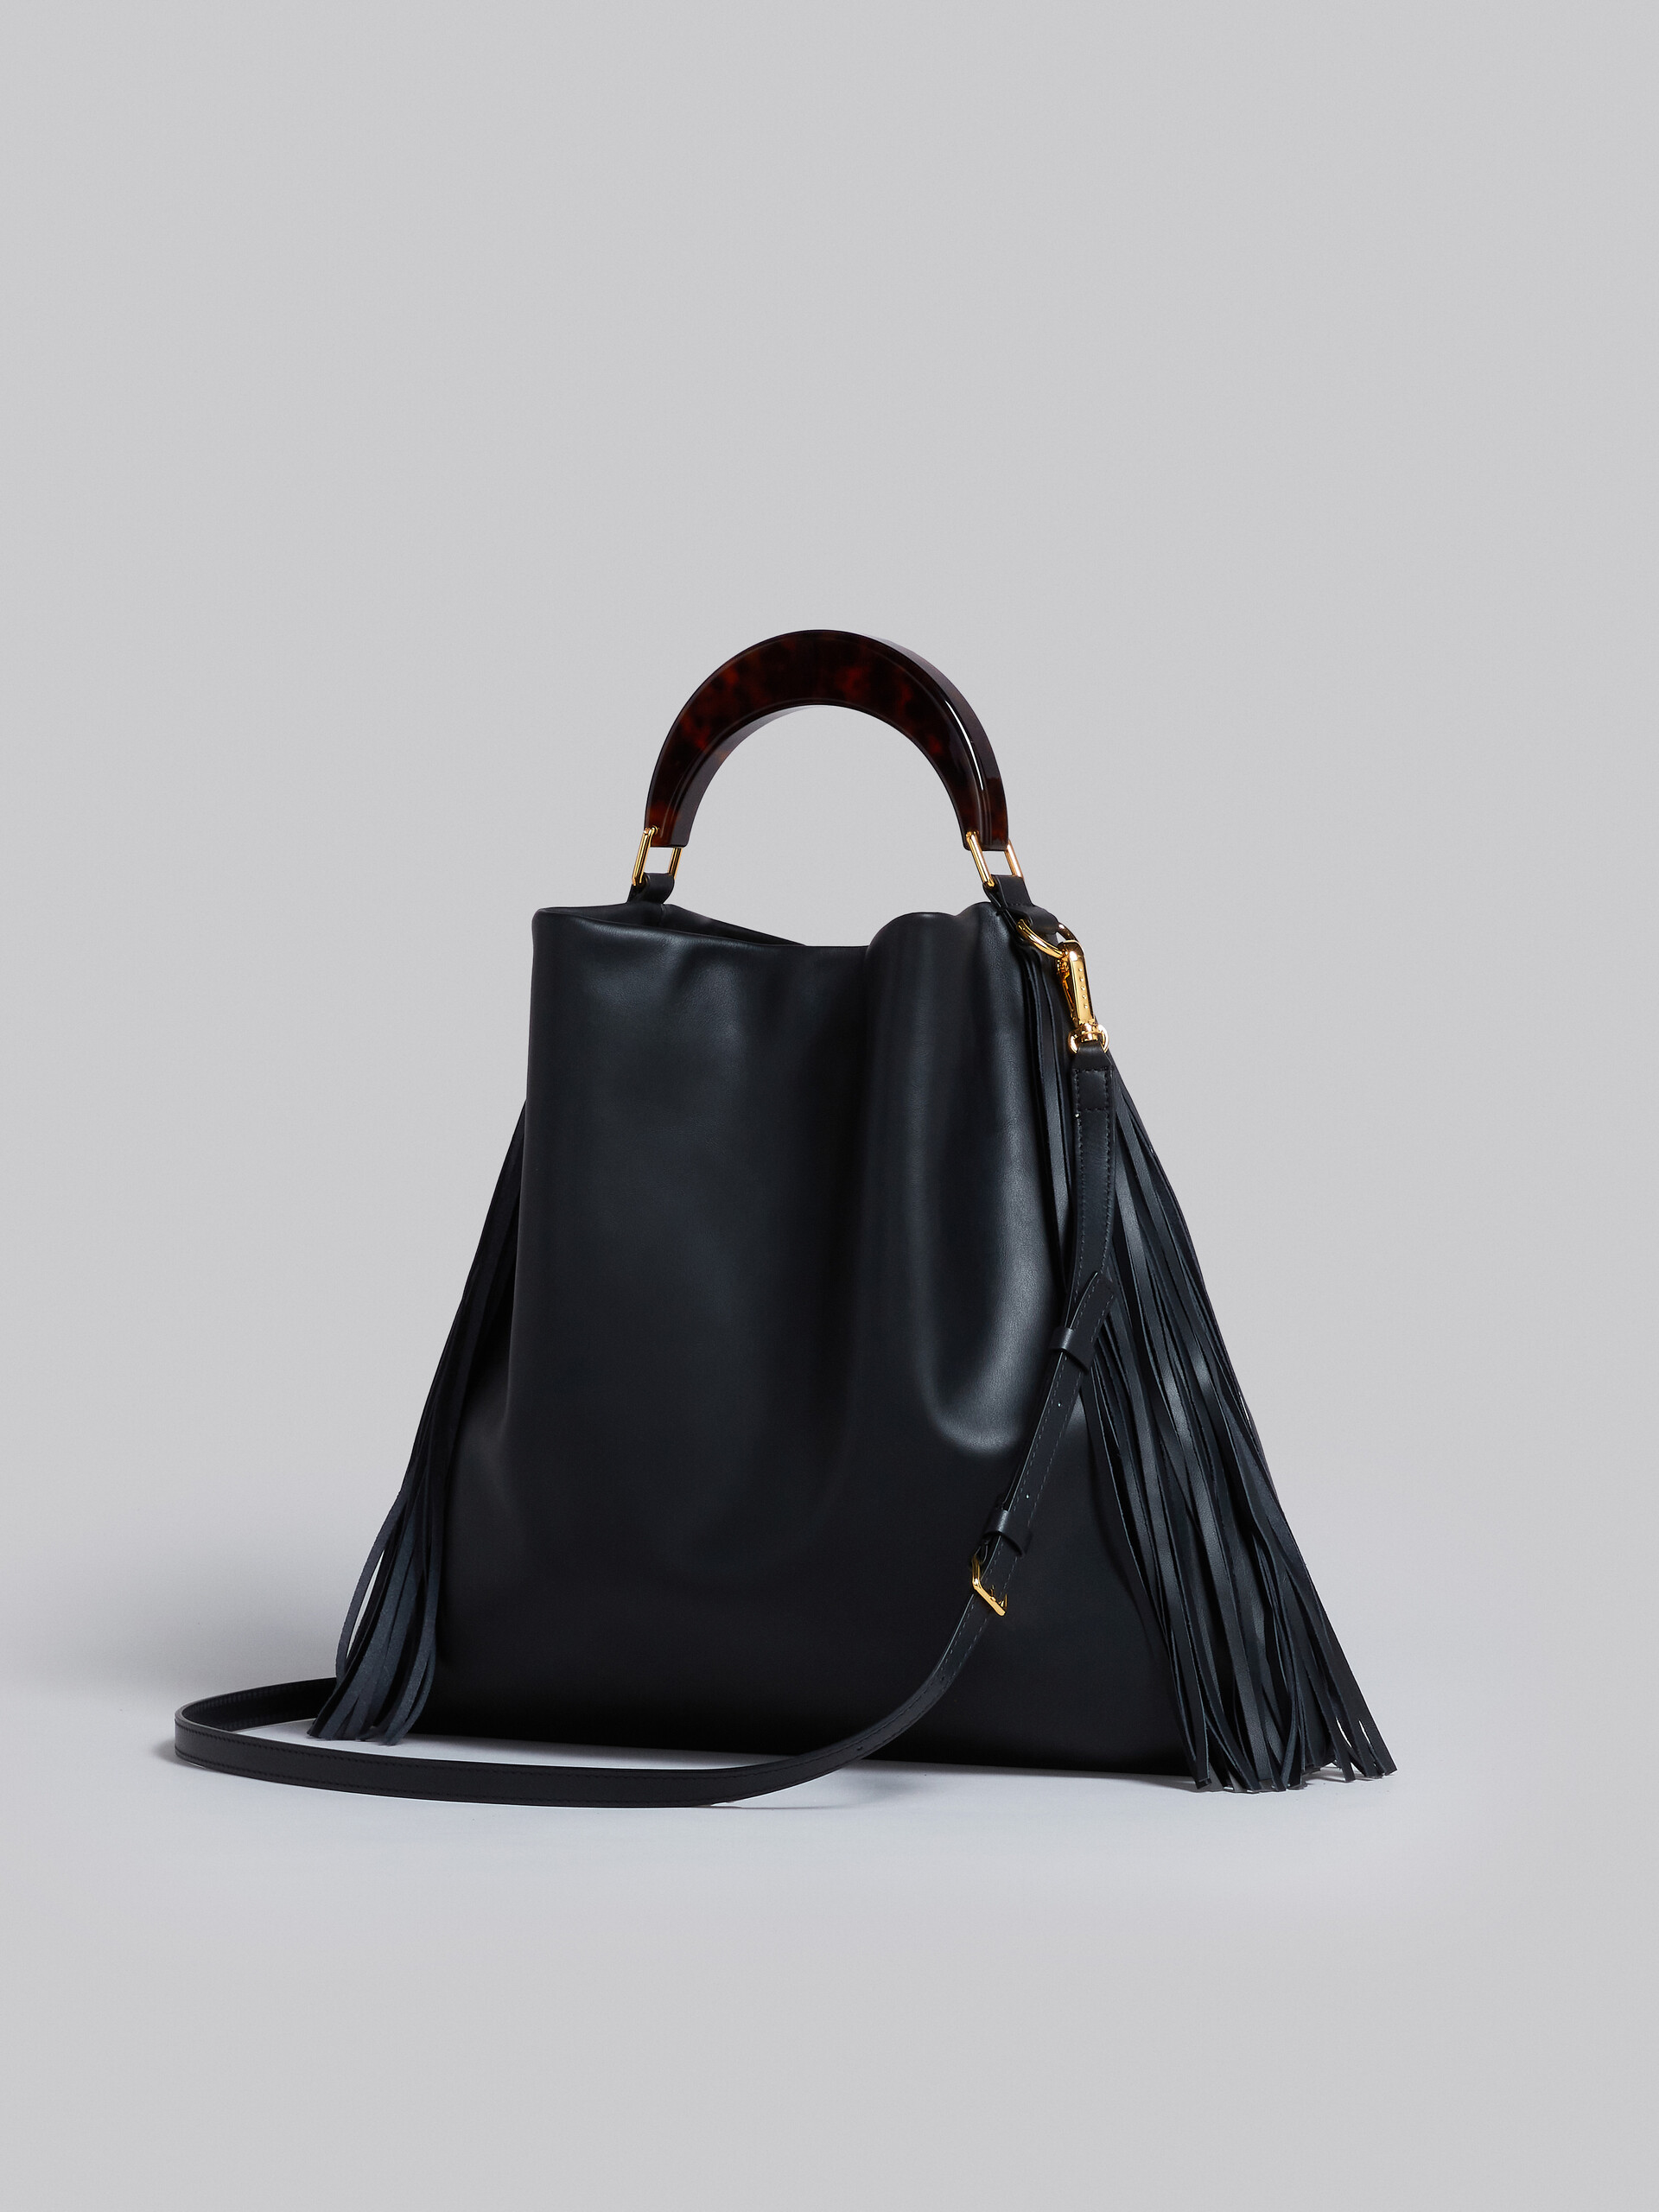 Venice Medium Bag in black leather with fringes - Shoulder Bag - Image 2